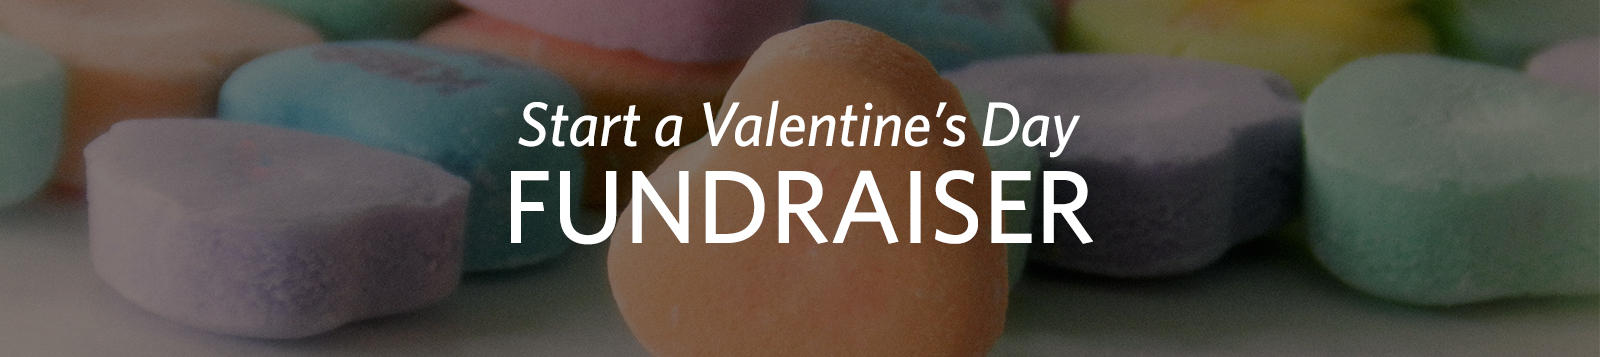 Start_a_Valentine's_Day_fundraiser